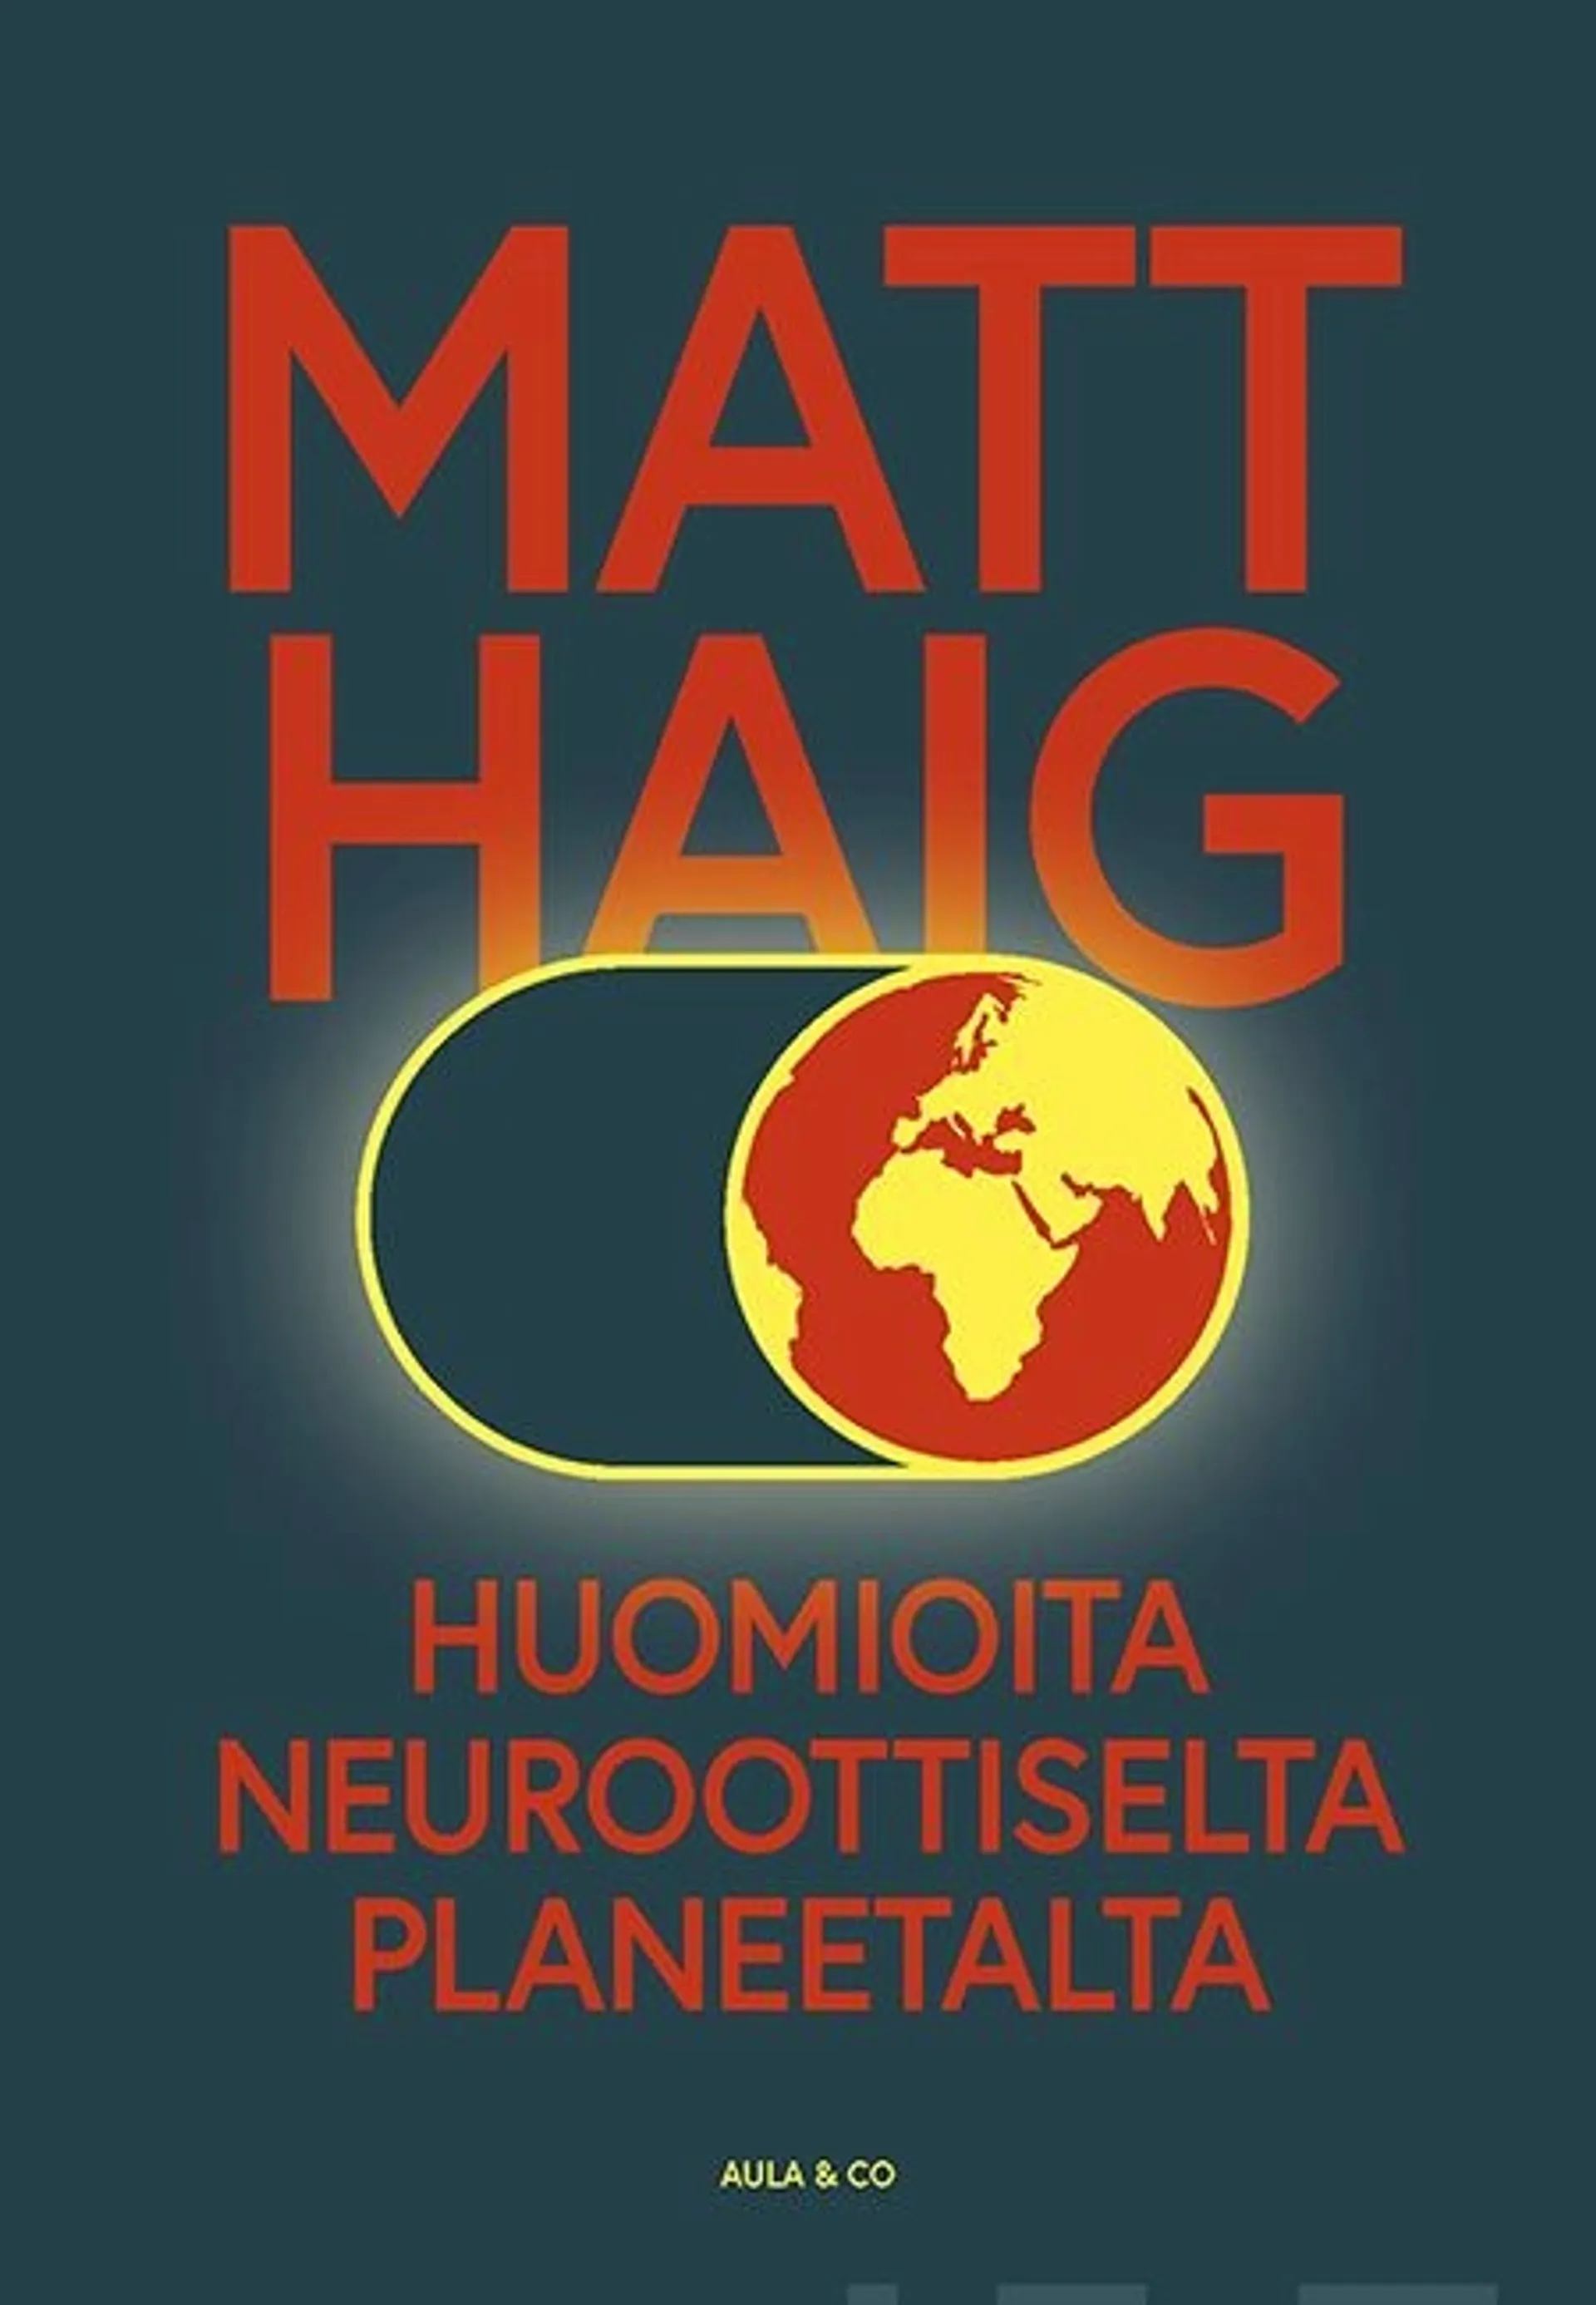 Haig, Huomioita neuroottiselta planeetalta